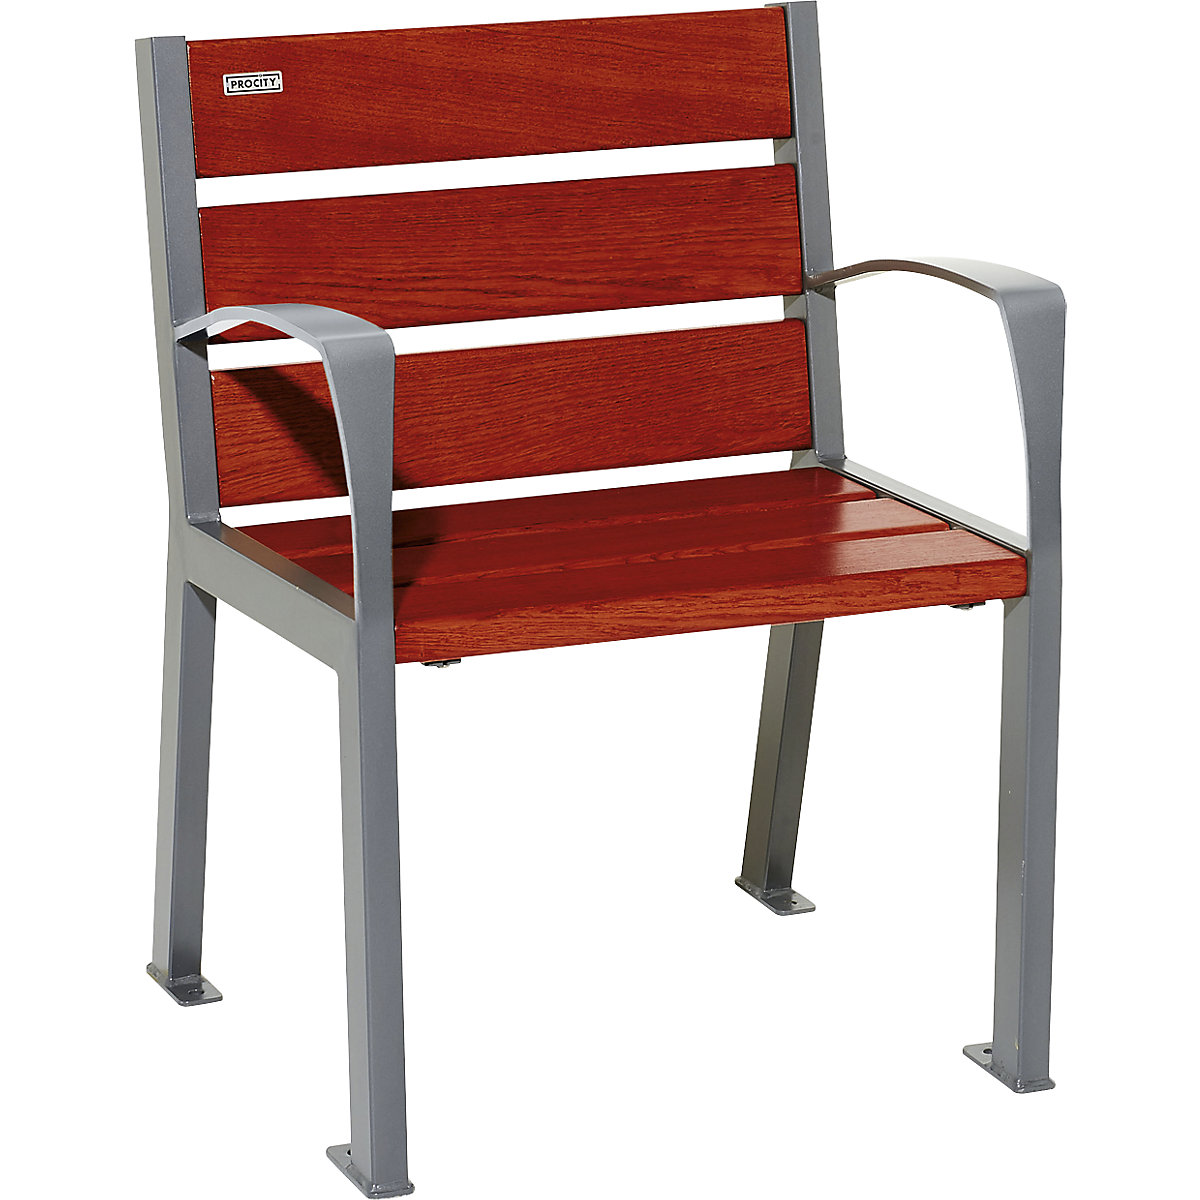 SILAOS® wooden chair – PROCITY